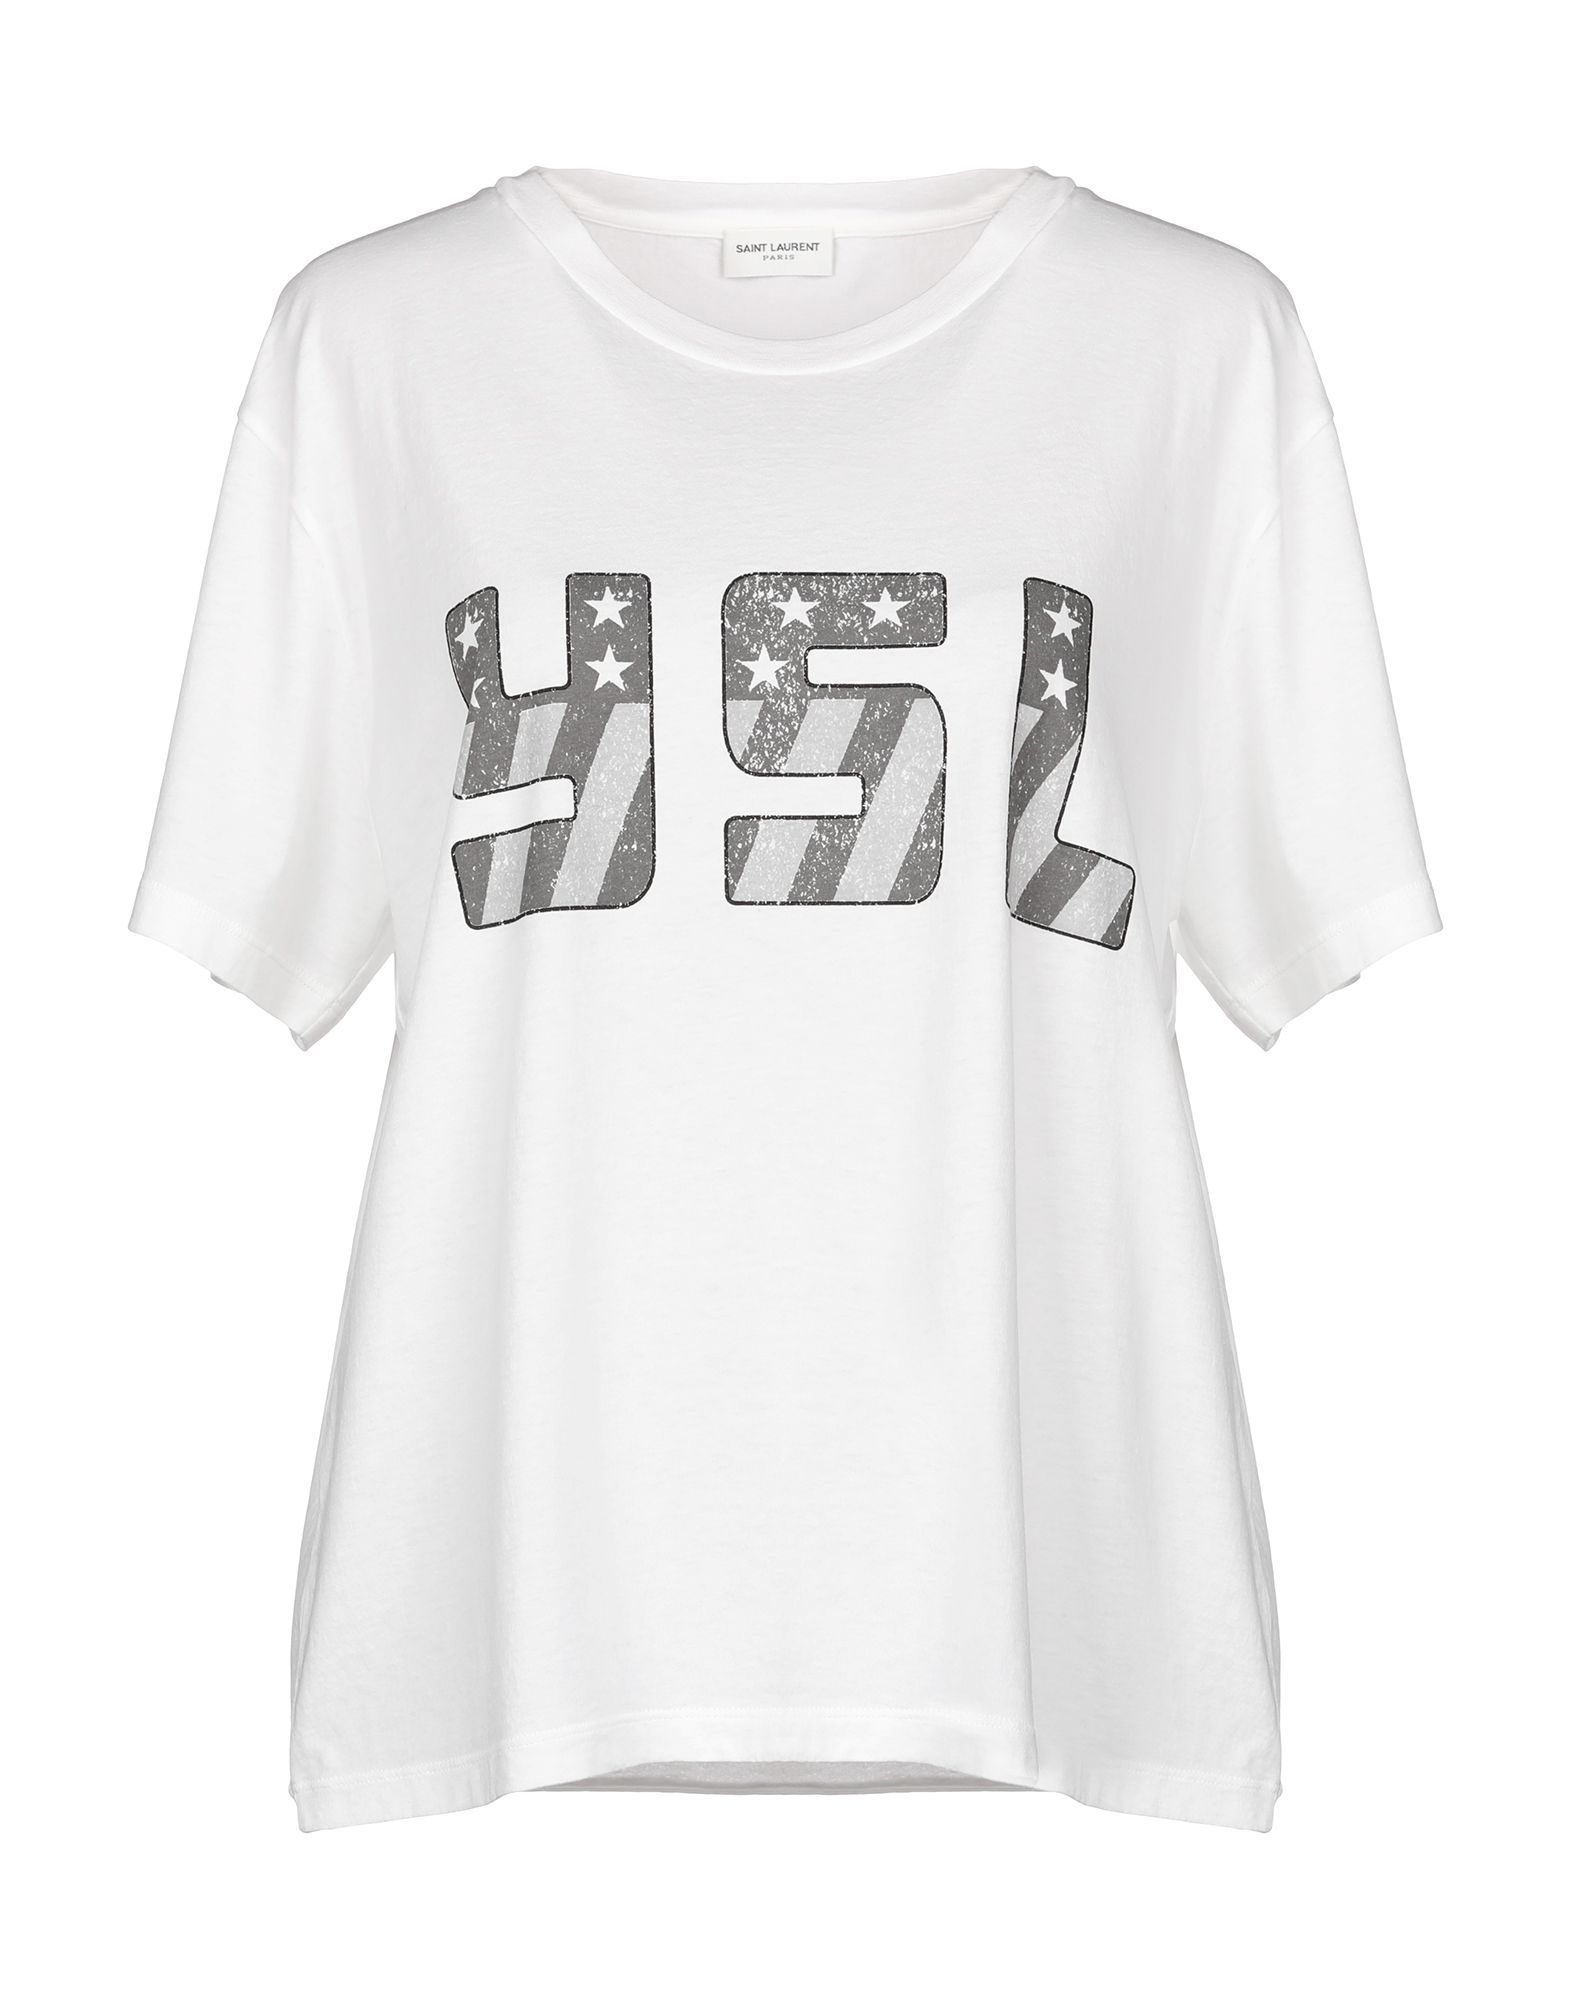 SAINT LAURENT T-shirts | YOOX (US)